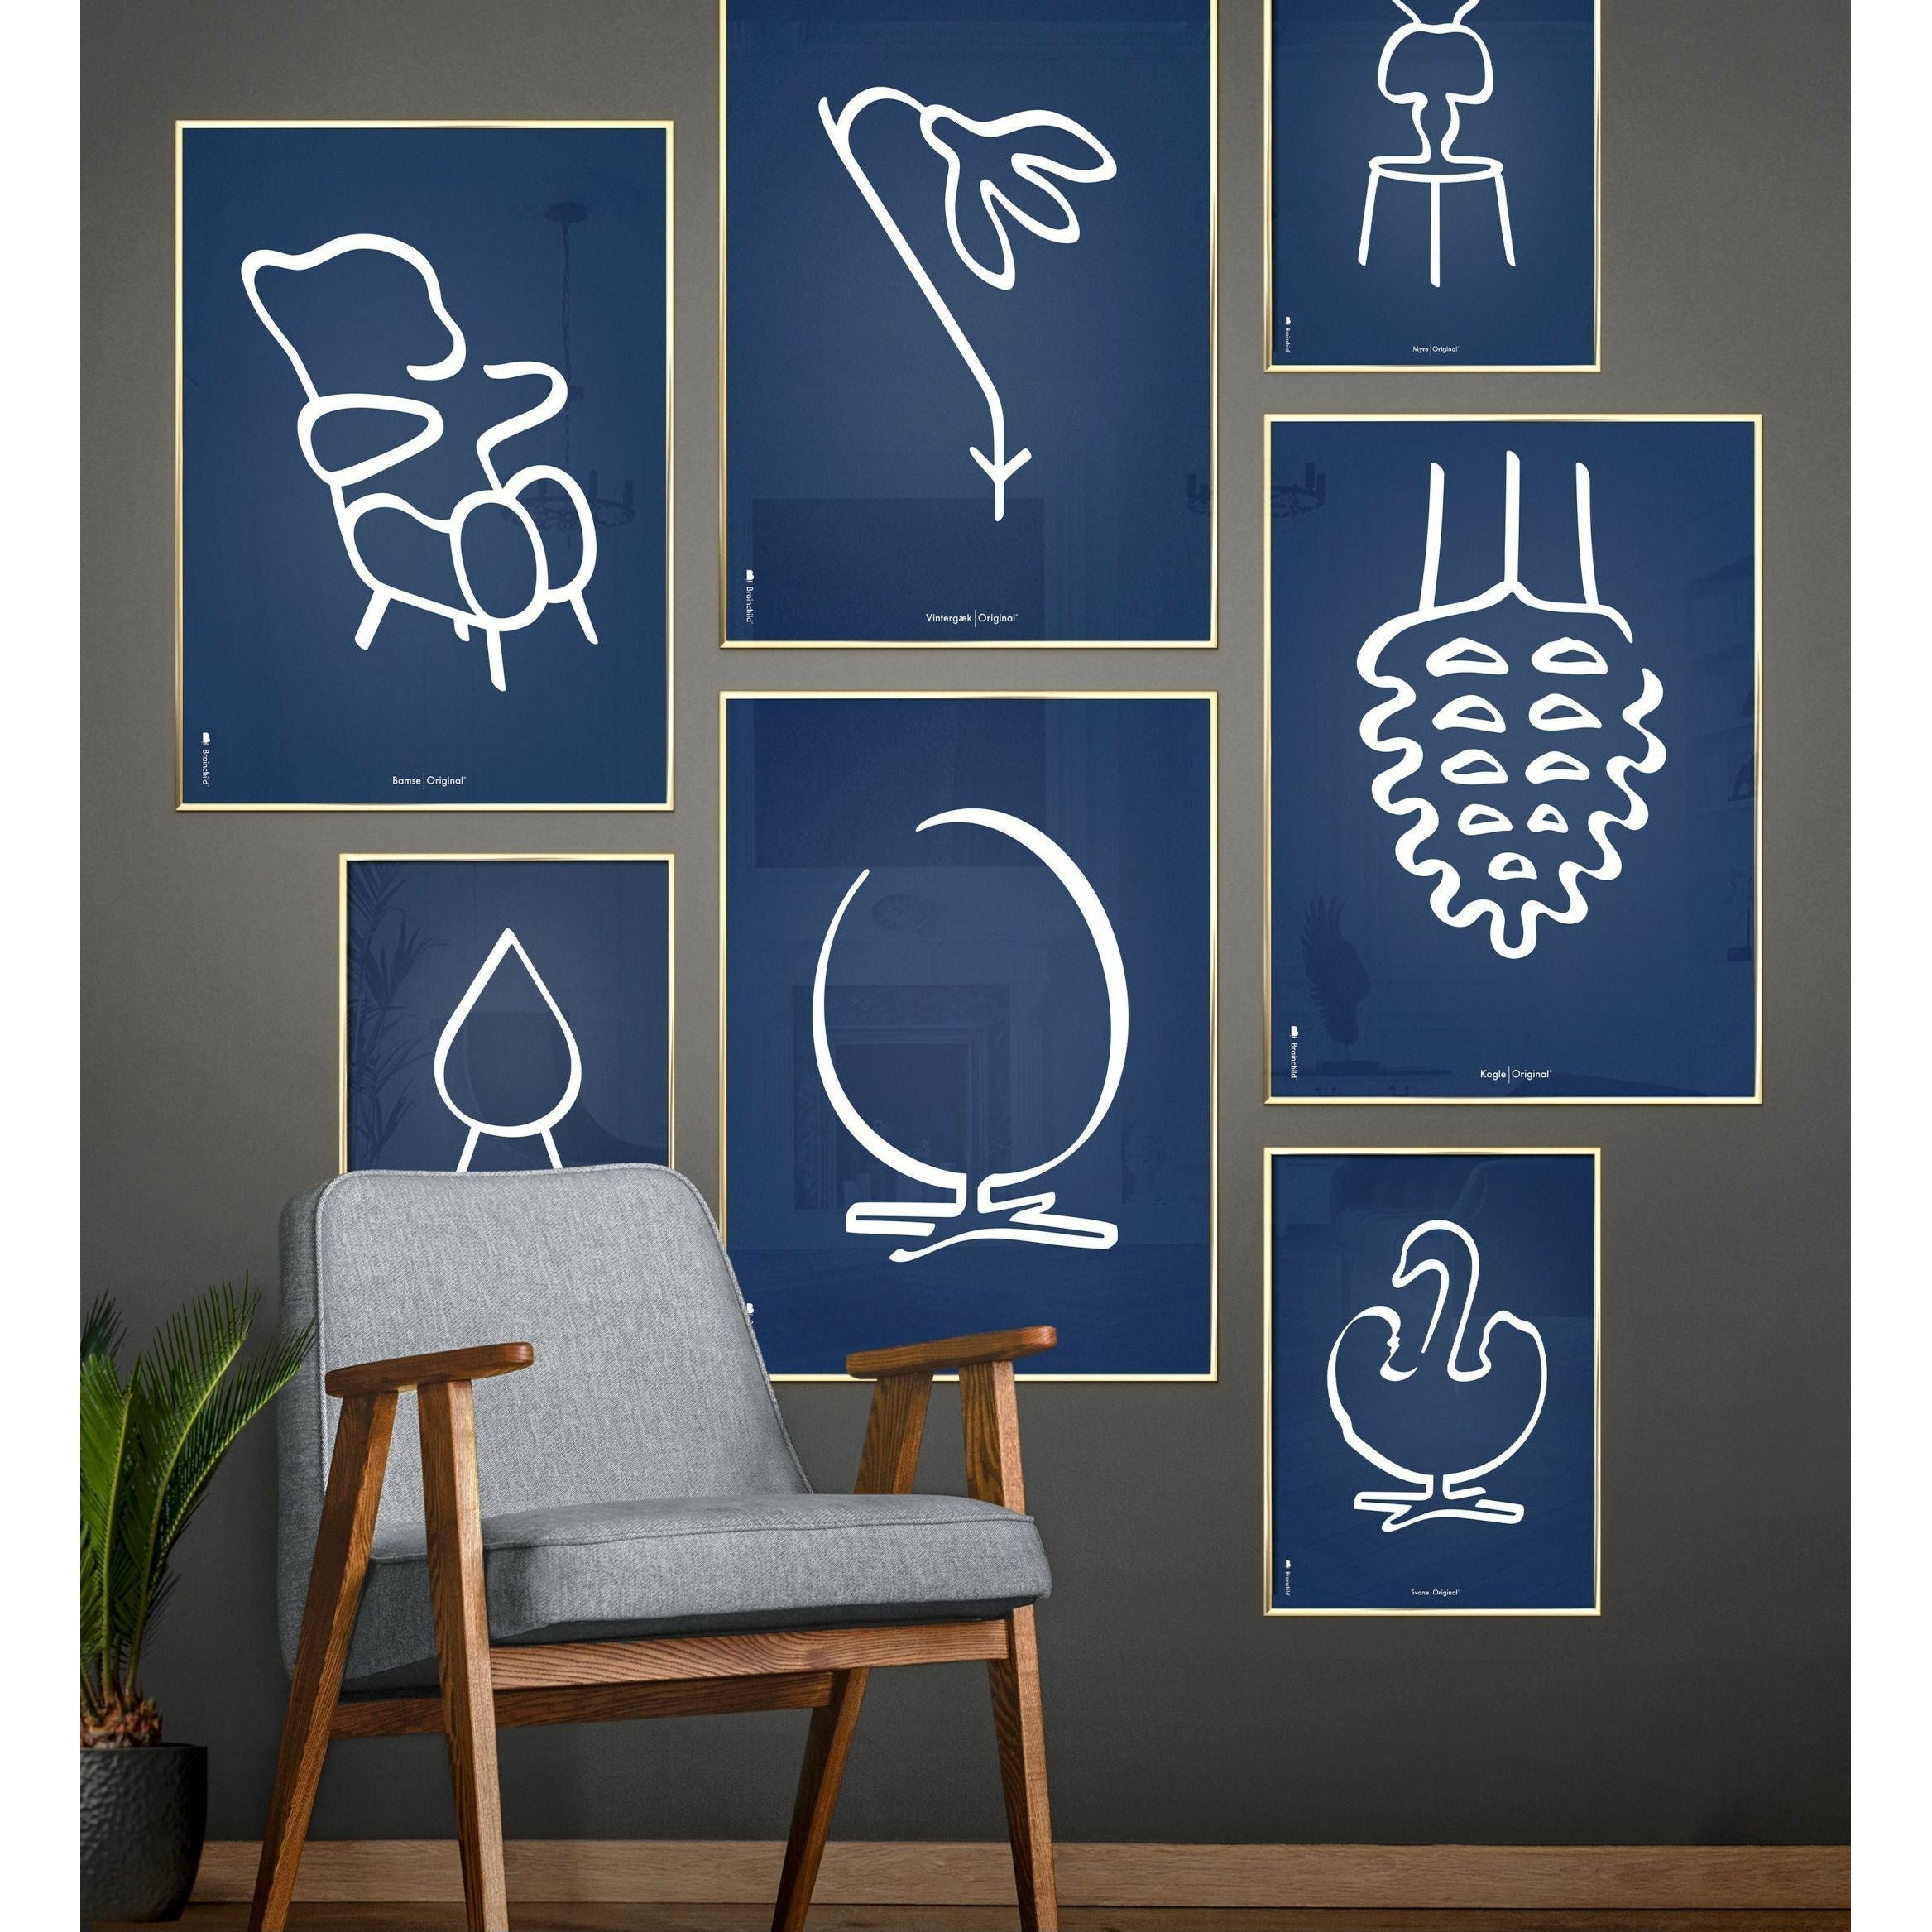 Pomysły plakat linii mrówek, rama wykonana z ciemnego drewna 70x100 cm, niebieskie tło